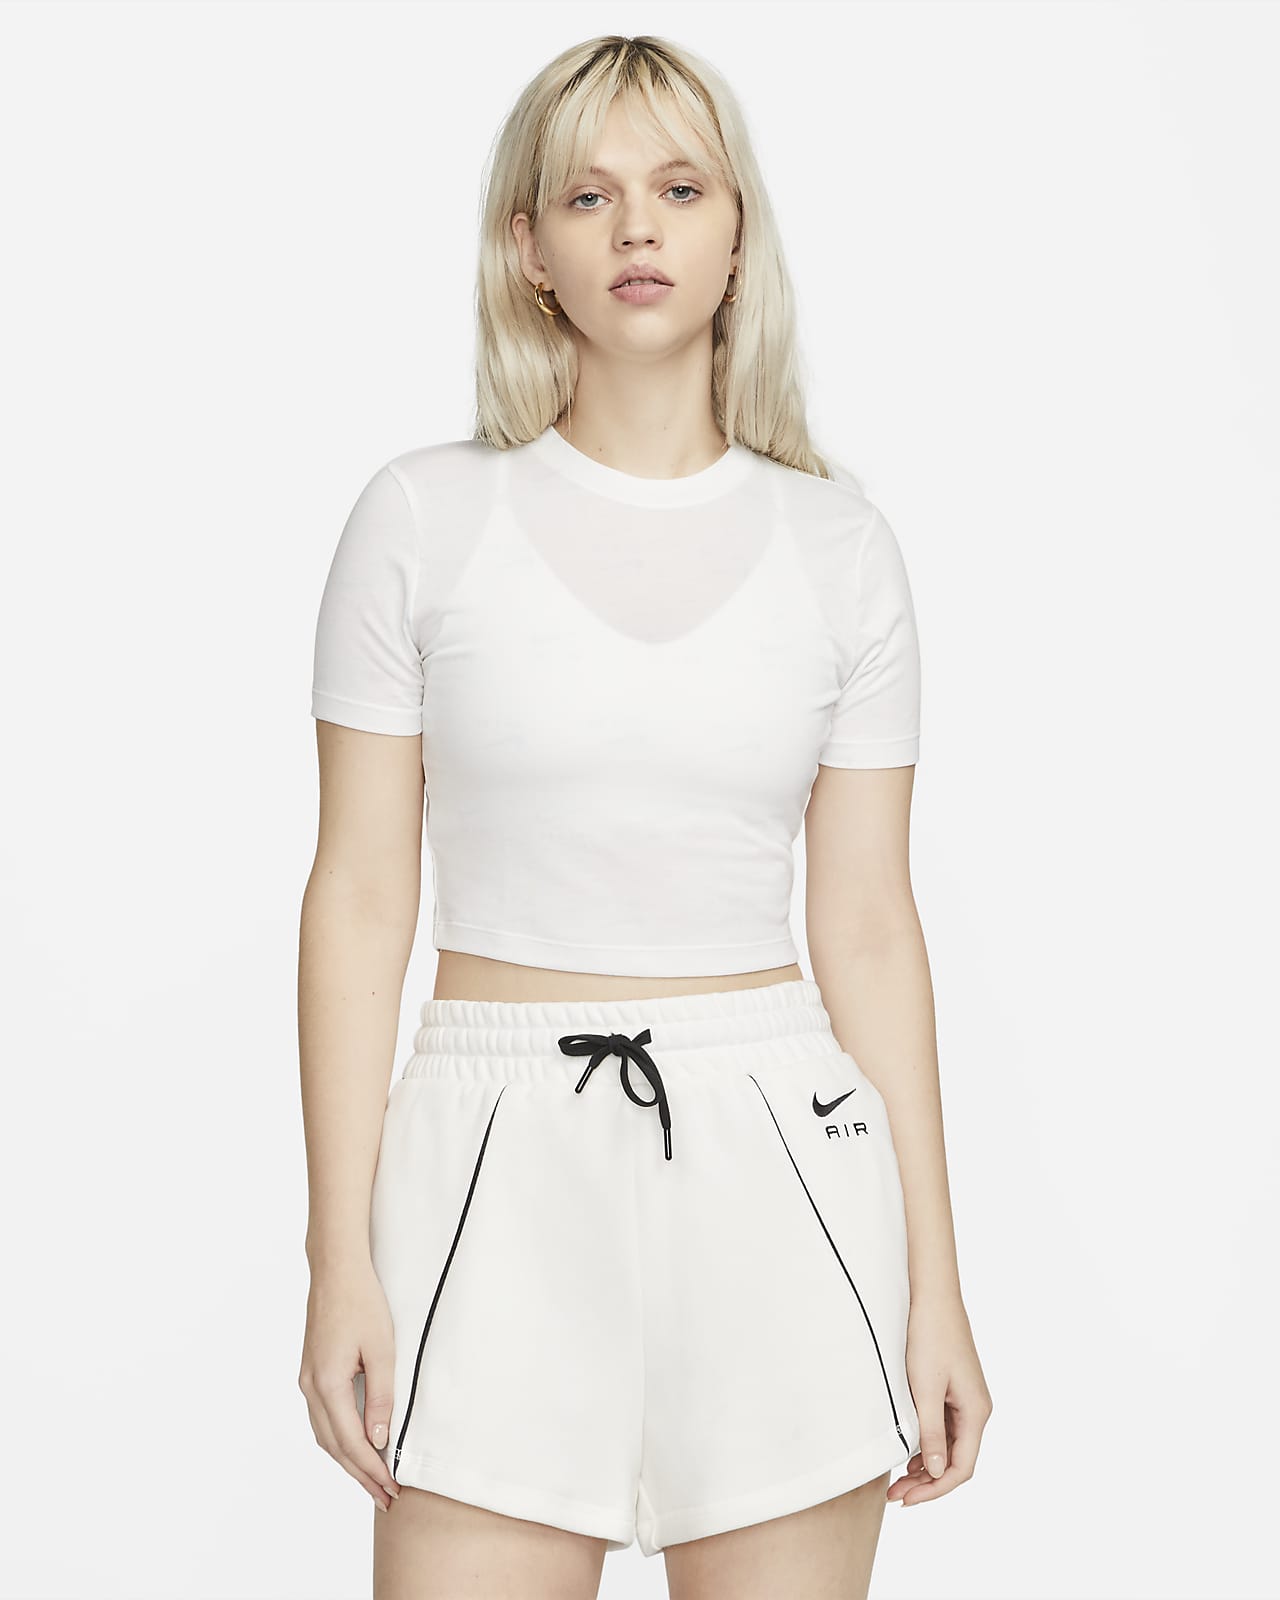 Nike Air Women's Slim-Fit Printed T-Shirt. Nike